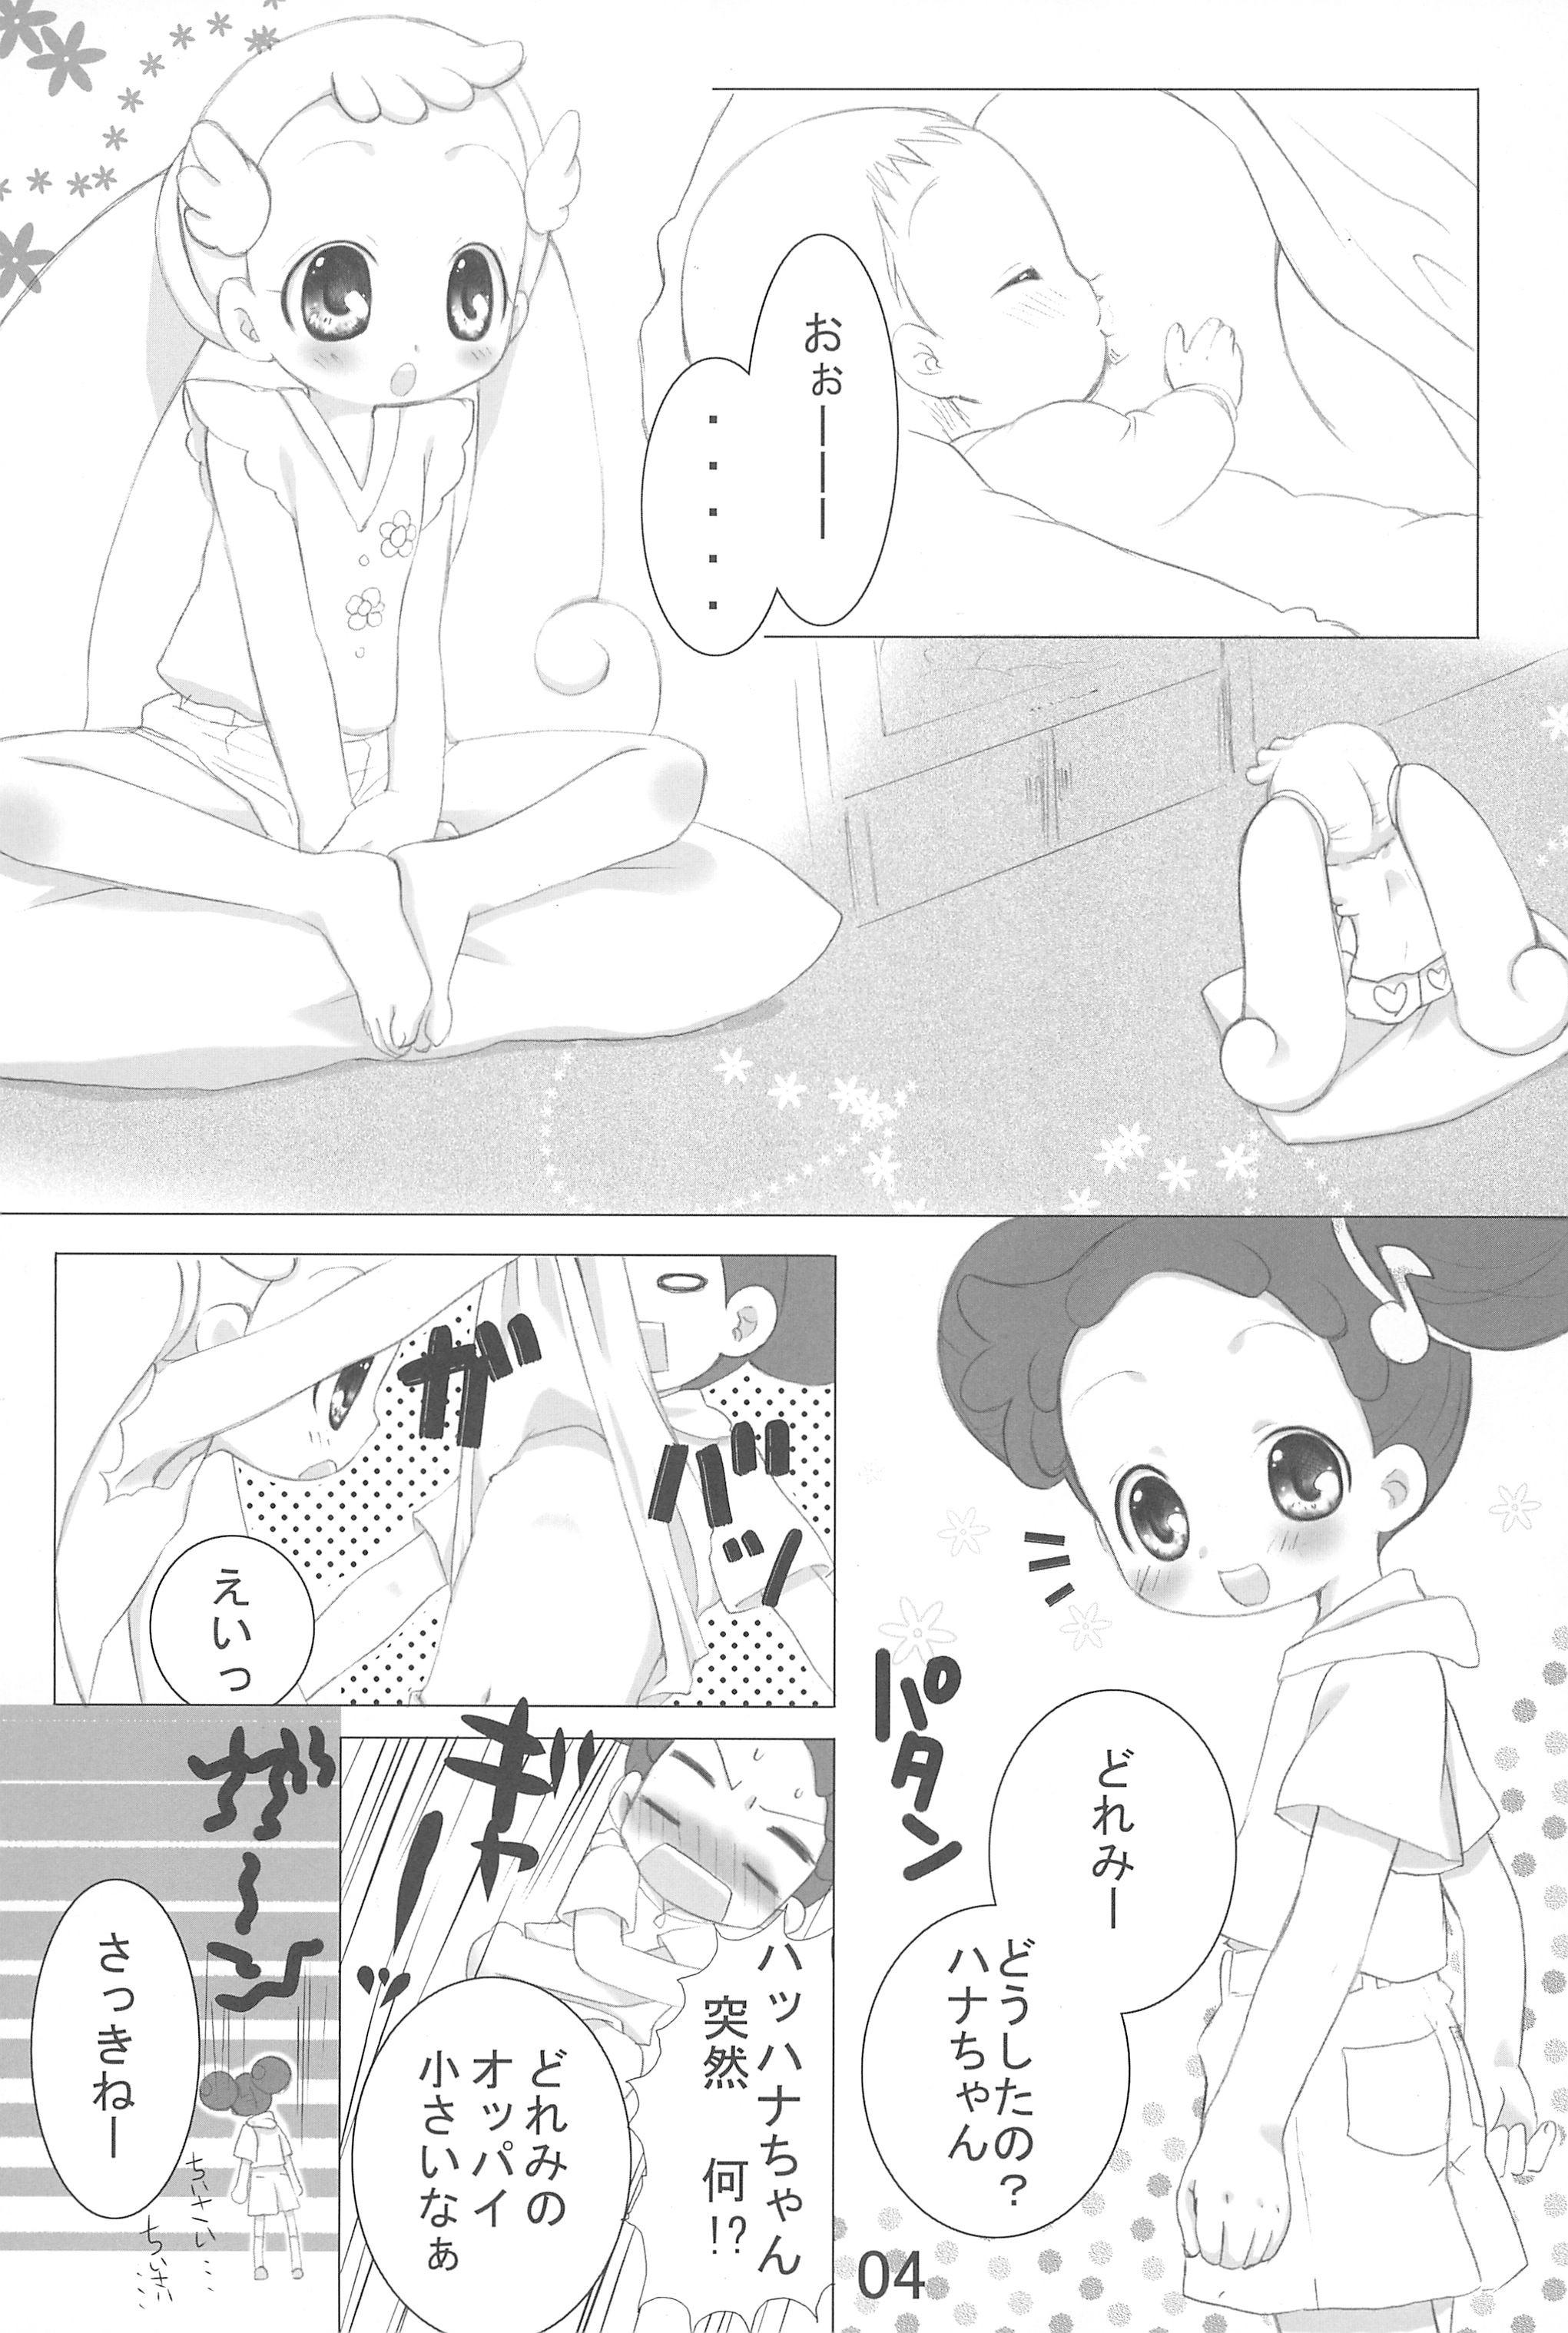 Redbone Doremix!! - Ojamajo doremi Anime - Page 4